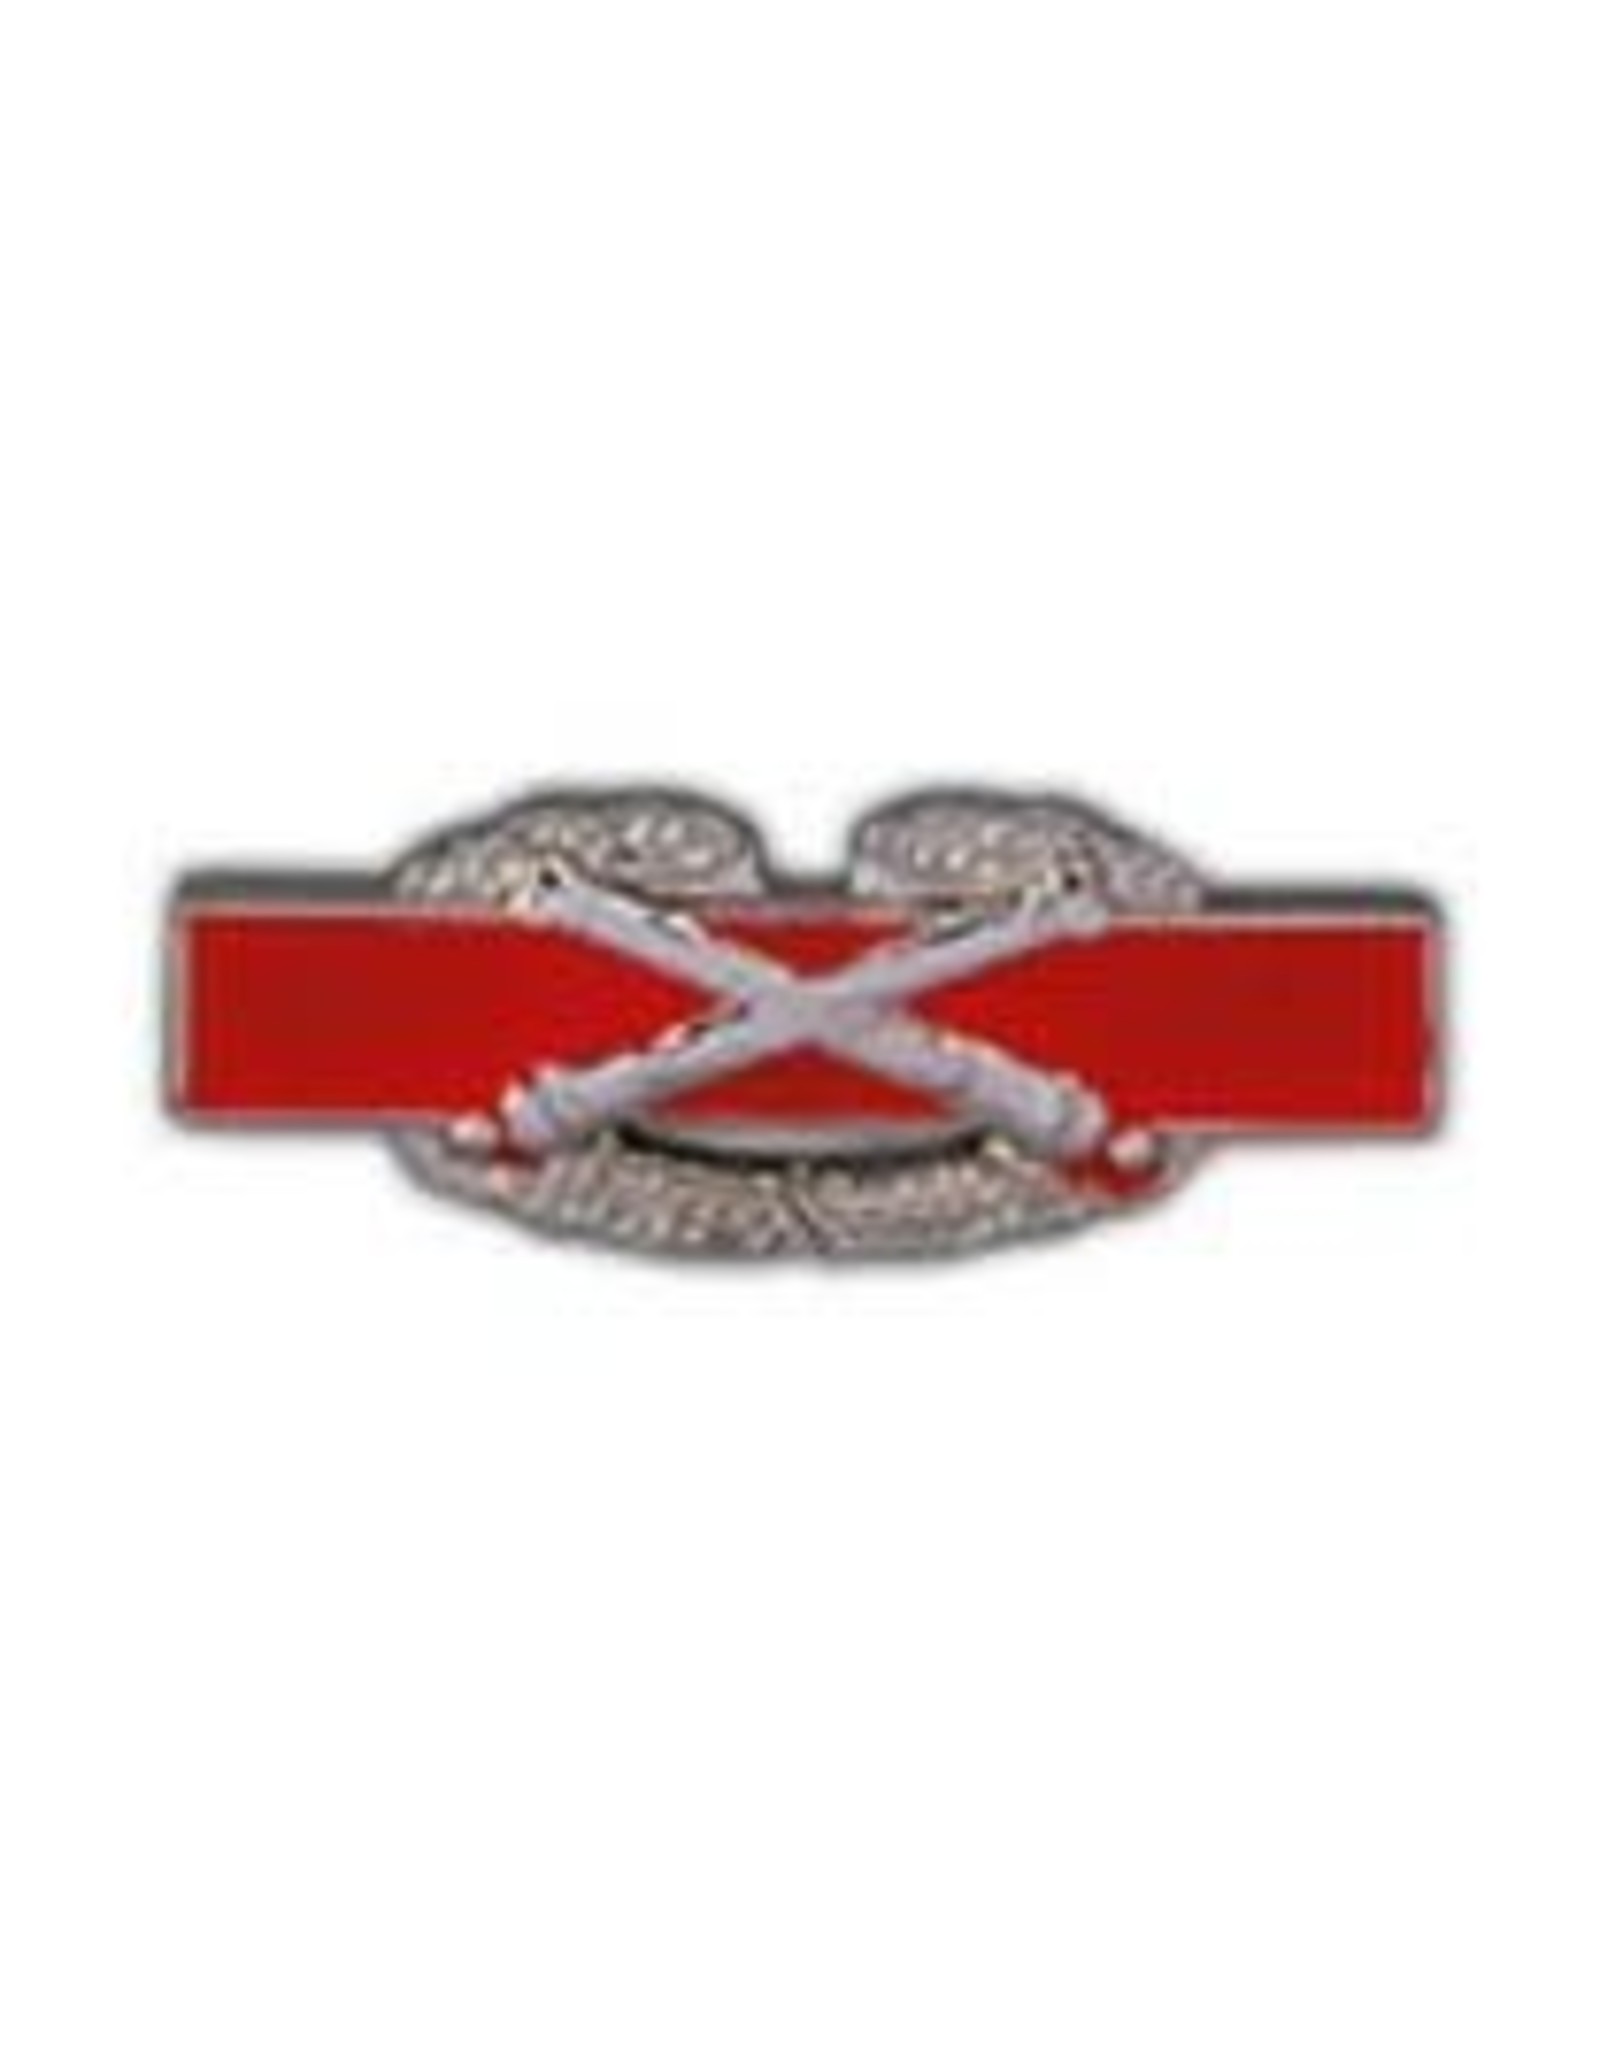 Pin - Army Combat Artillery Badge, 1 1/2"